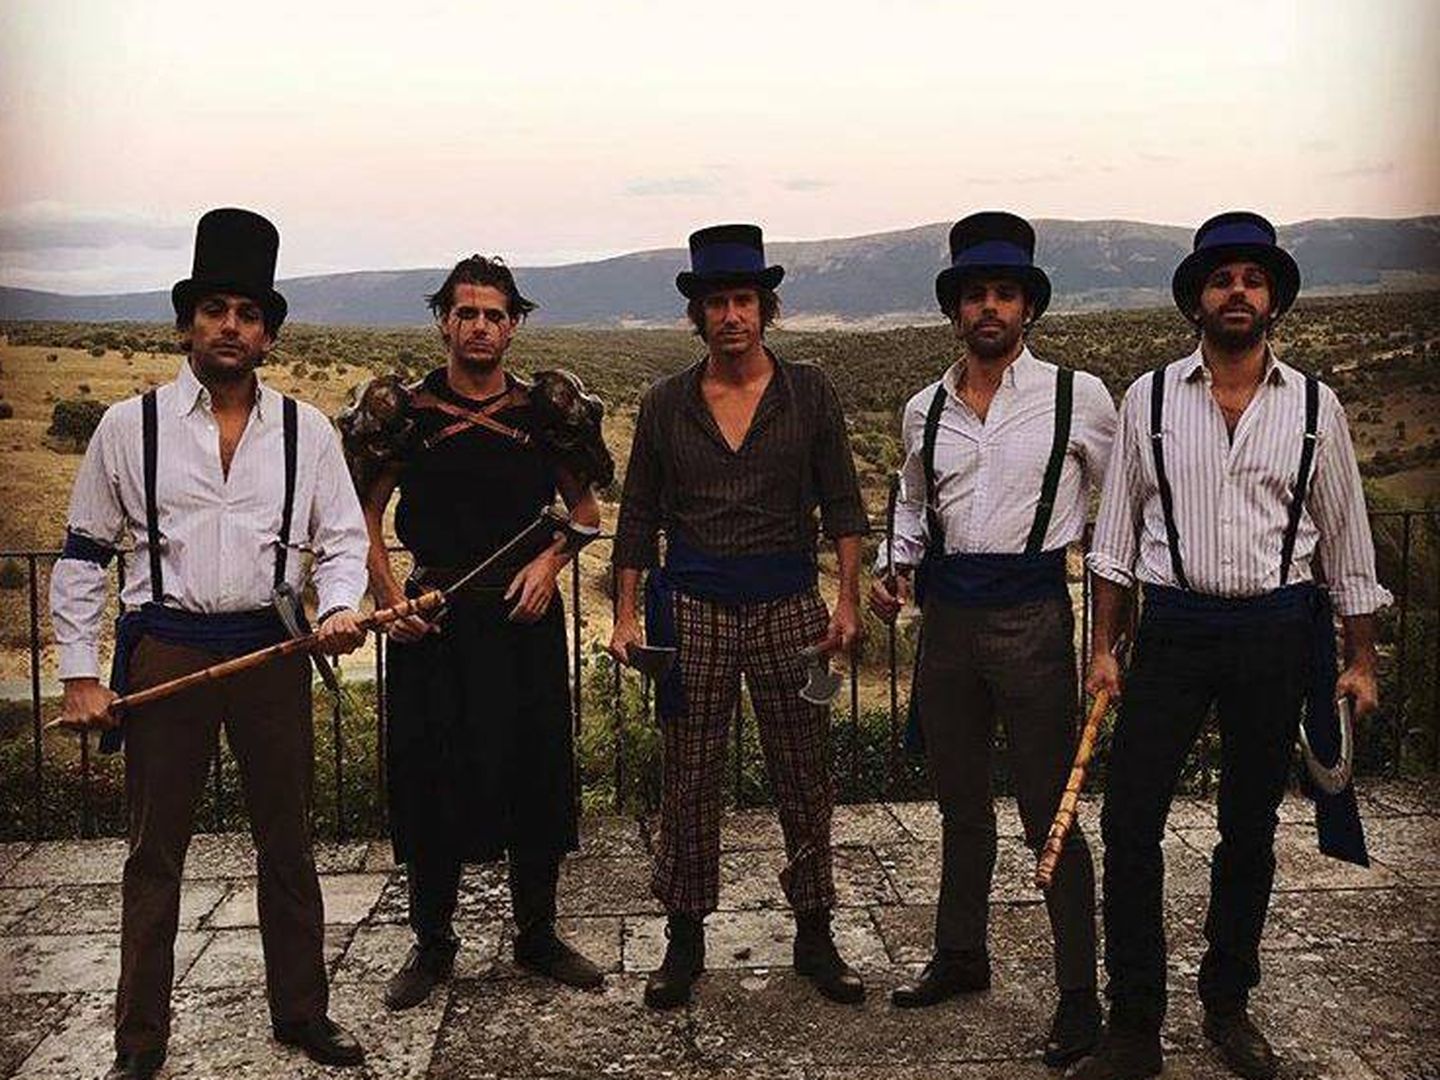 Alonso Aznar y sus amigos, disfrazados de 'La naranja mecánica'. (Redes)